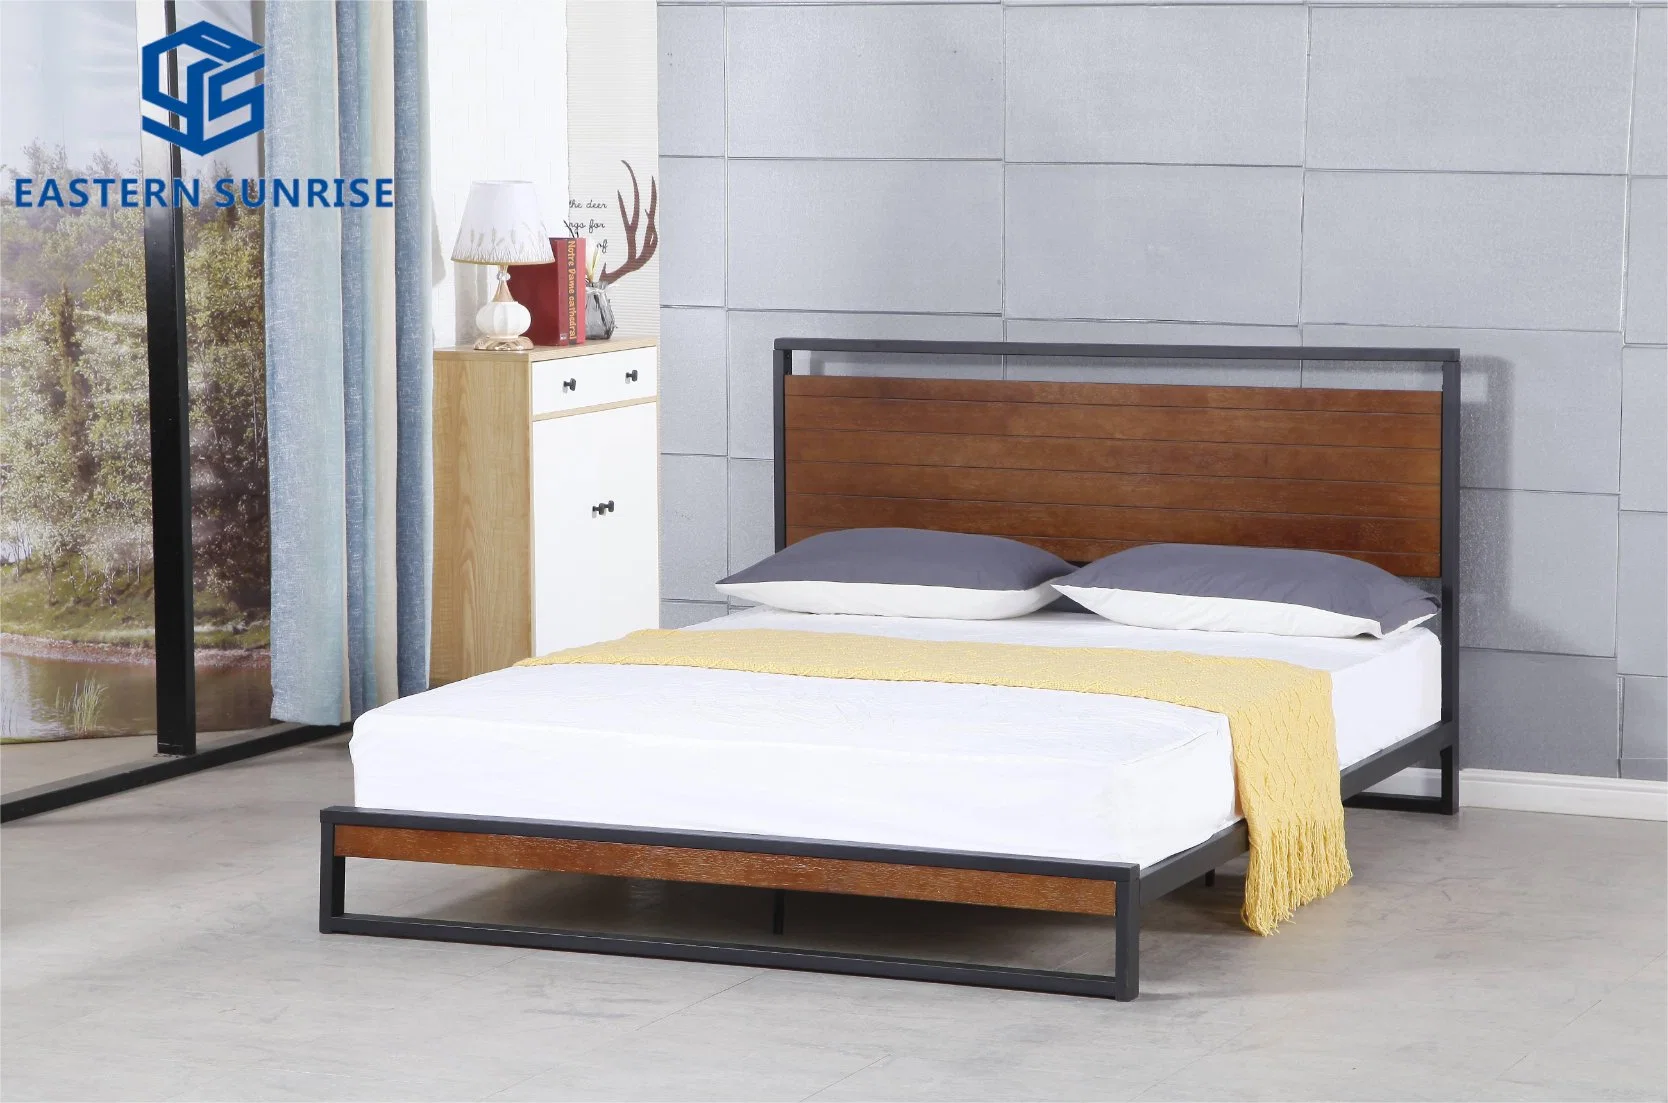 تصميم حديث ألواح خشبية وإطار سرير معدني الصلب سرير